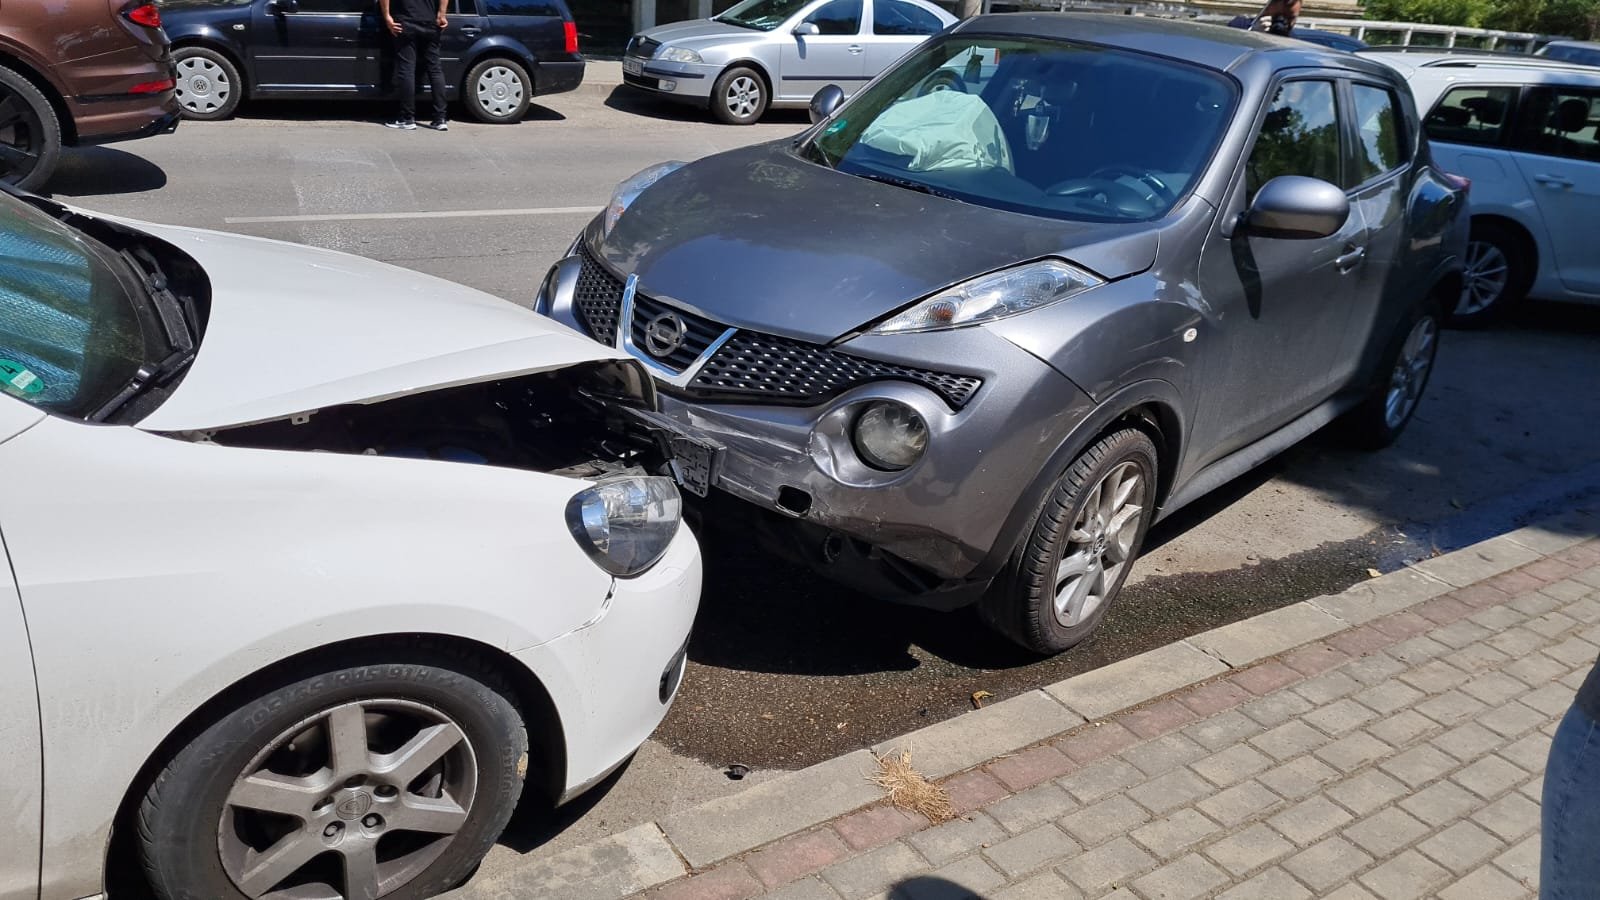  O șoferiță a lovit trei autoturisme, pe Sărărie FOTO/VIDEO